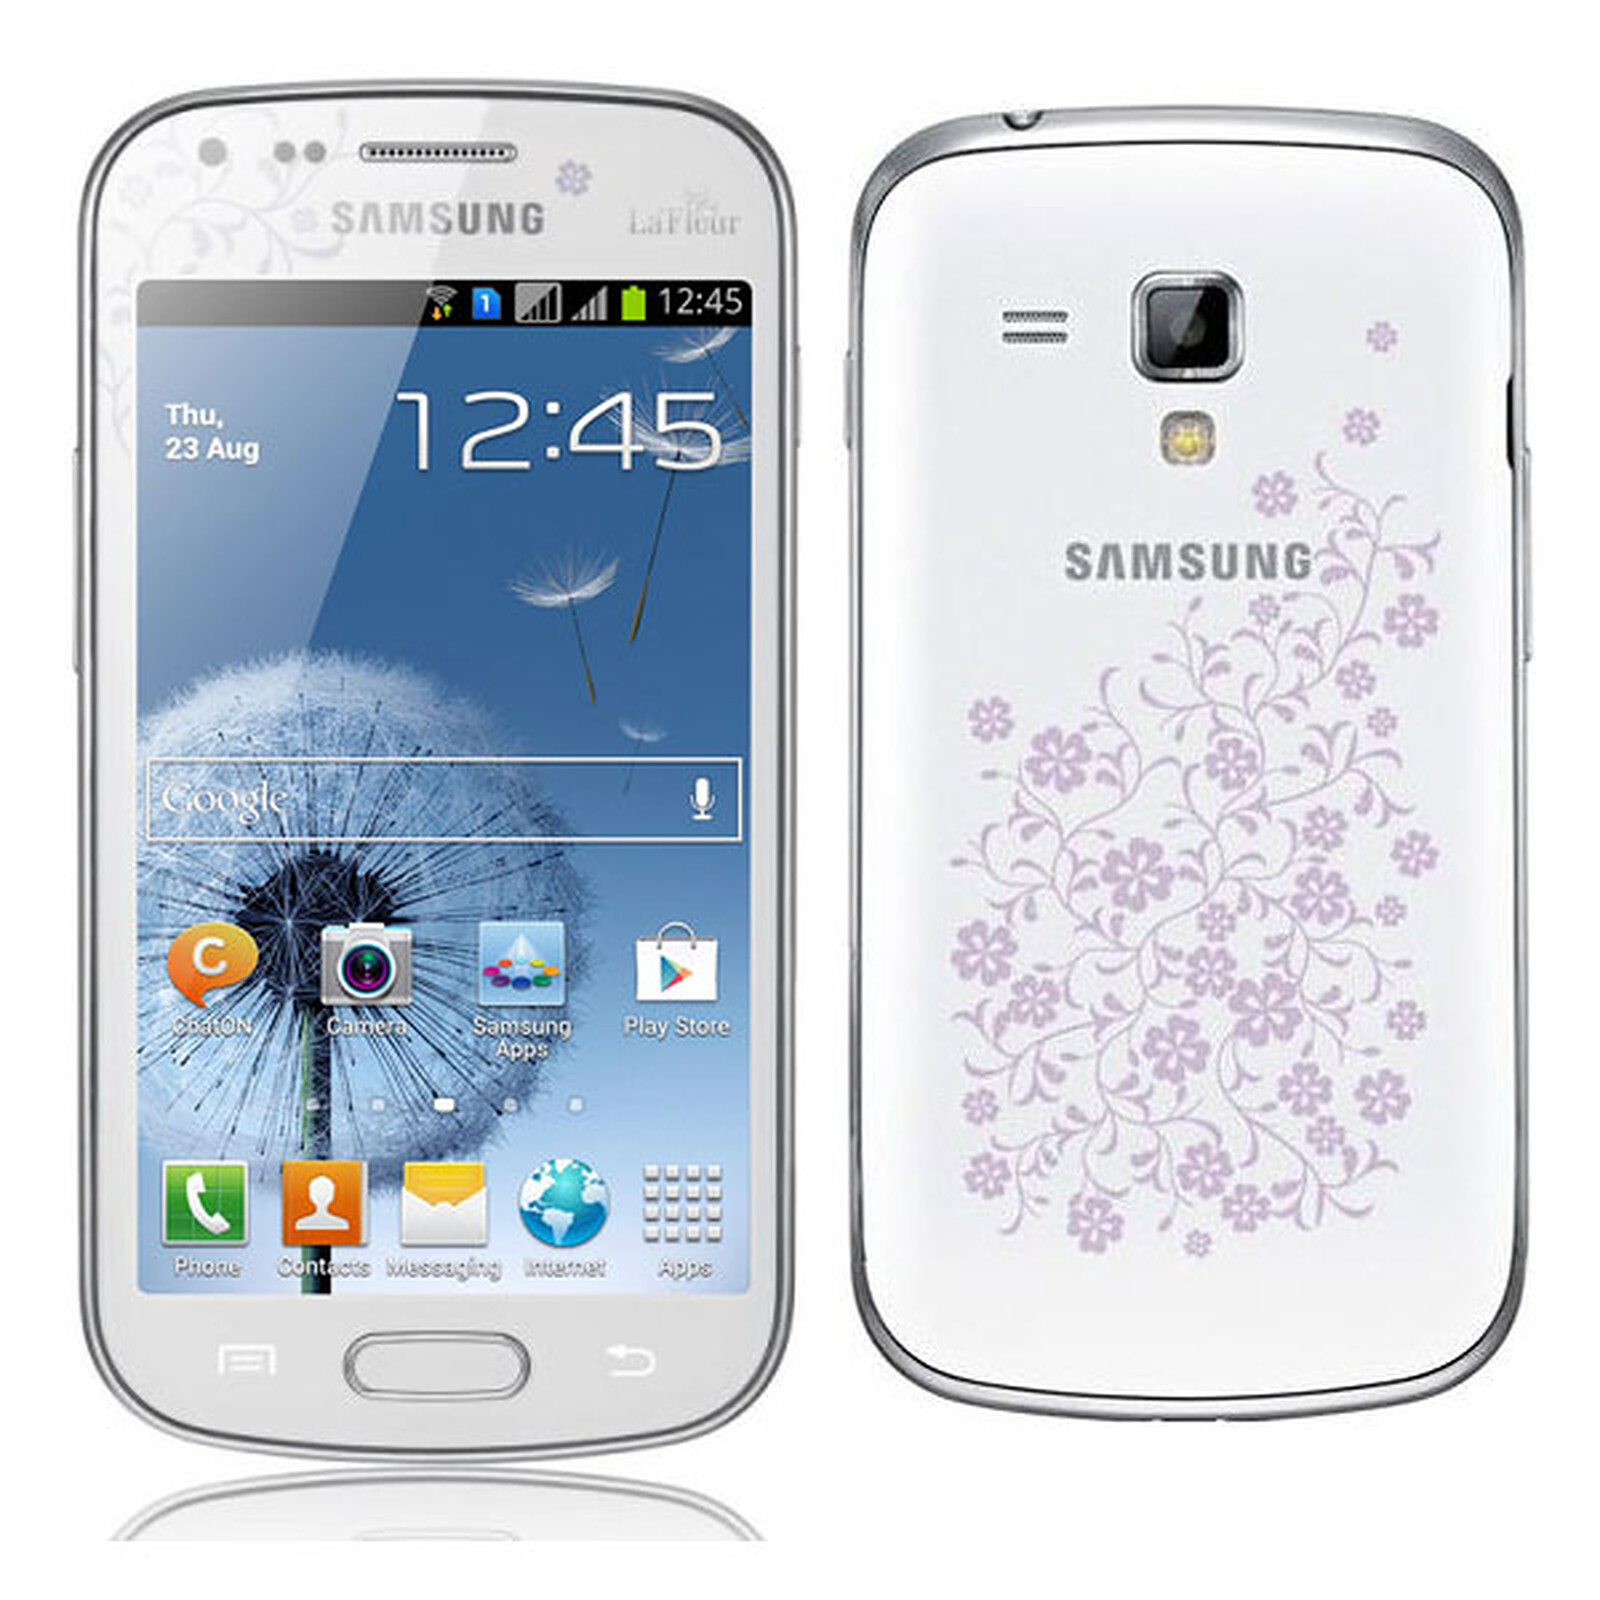 Samsung galaxy s duos la fleur price india